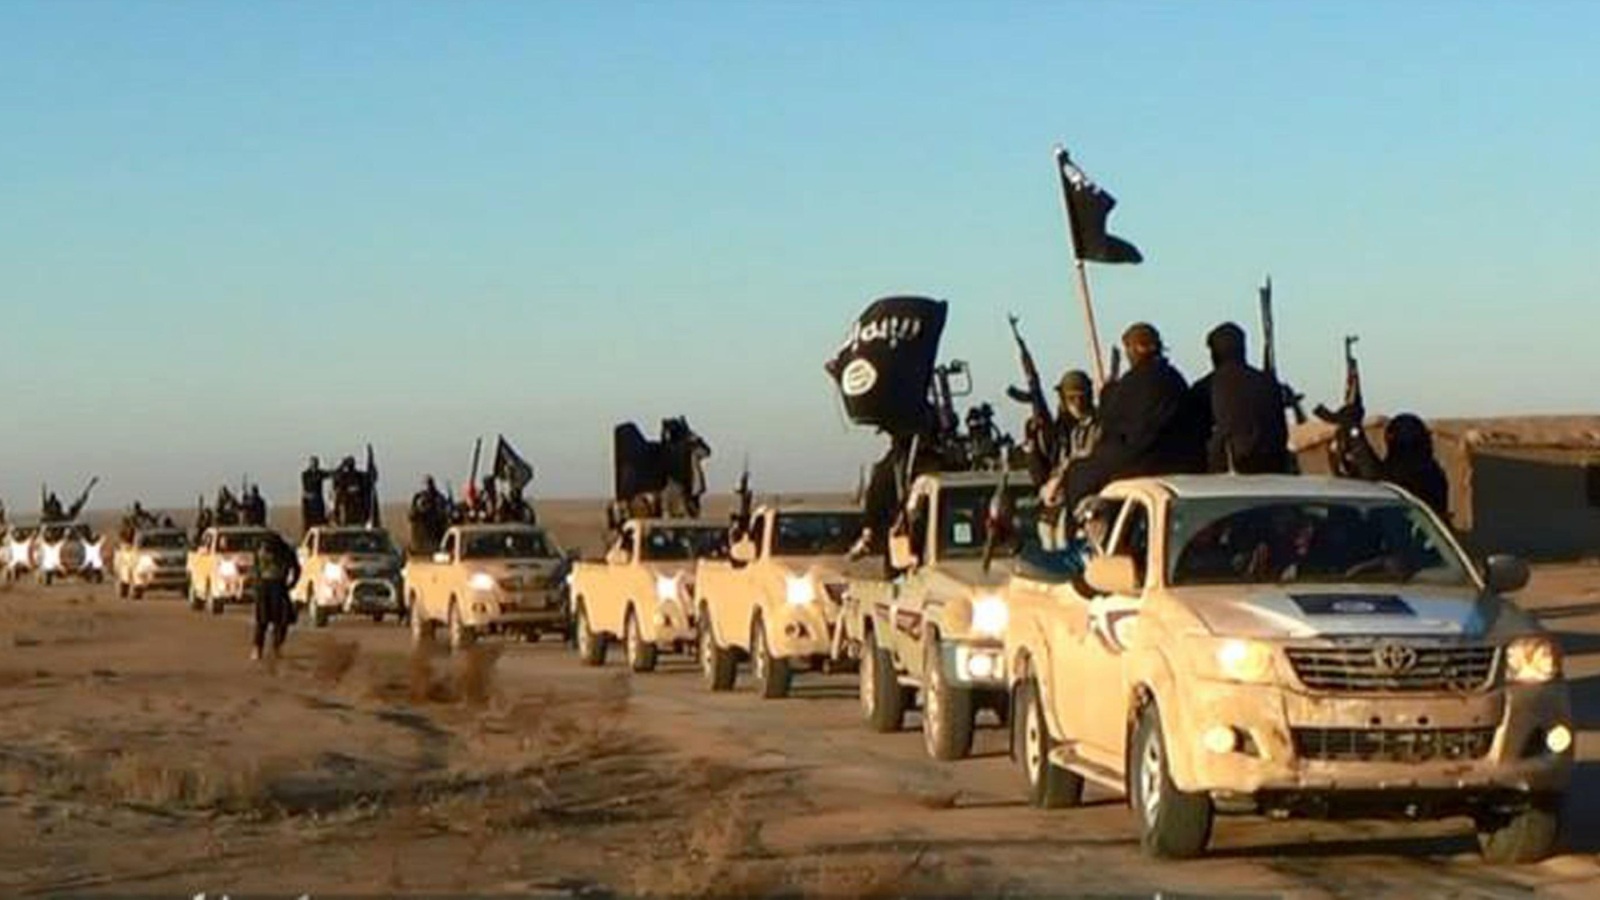 ‪قافلة لمقاتلي تنظيم الدولة تنتشر في منطقة الأنبار غربي العراق منتصف 2014‬ (أسوشيتد برس)